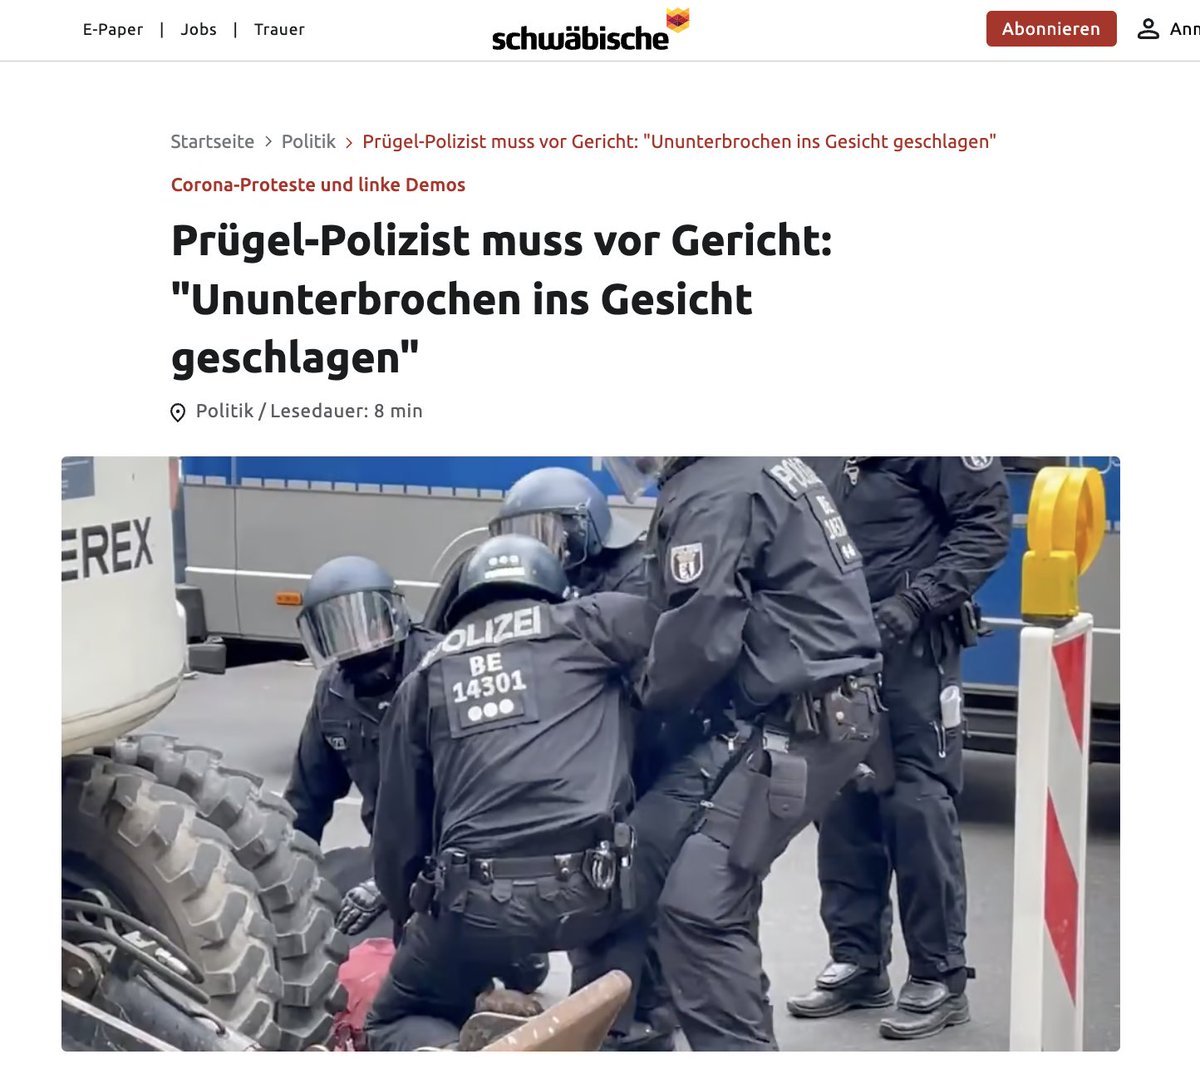 Corona-Proteste: Berliner Polizist kommt wegen Körperverletzung im Amt in zwei Fällen vor Gericht Bei Corona-Protesten soll der Polizist Dominic H. mit der Rückennummer #BE14301 mehrfach Demonstranten misshandelt haben. Dafür kommt er nun vor Gericht. „Konkret geht es um…